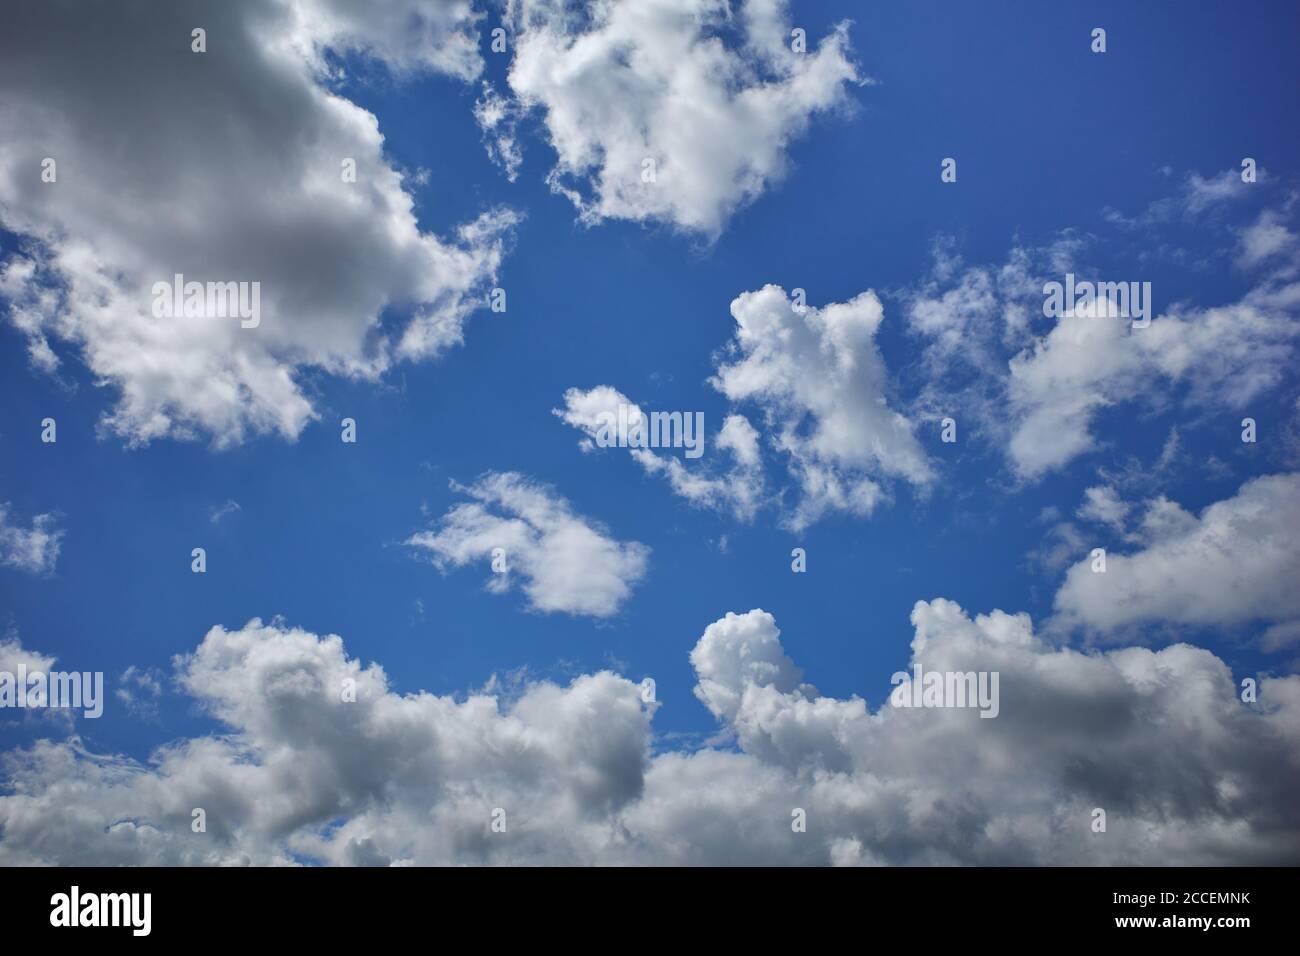 Geschwollene Kumuluswolken bilden eine hoch aufragende Luftmasse in blauem Himmel. Sonnenglänzendes Wetter. Hintergrund für Vorhersage und Meteorologie Illustration Stockfoto